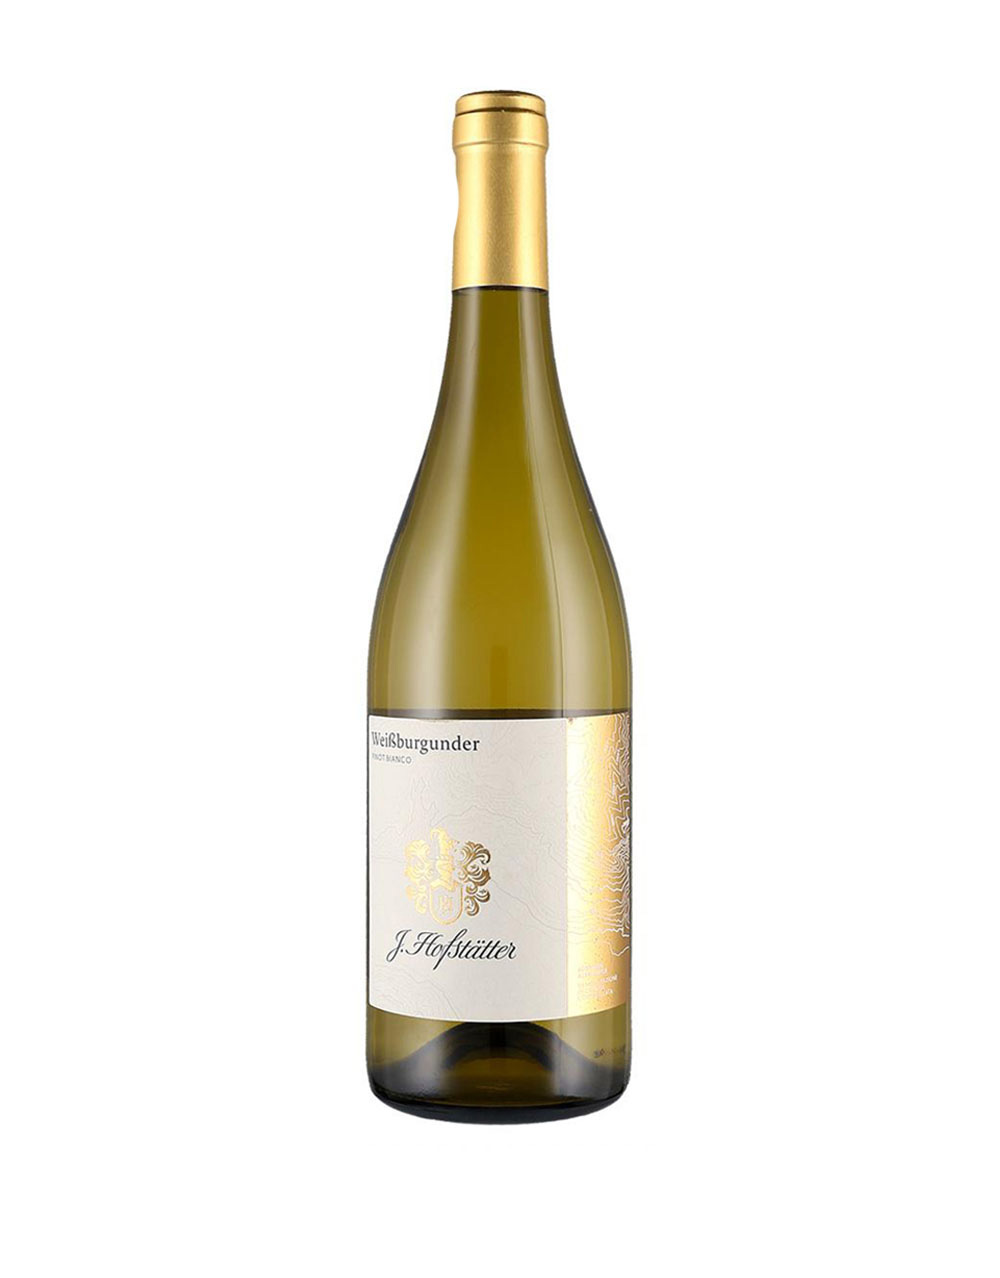 J. Hofstatter Weissburgunder Pinot Bianco Sudtirol Alto Adige Italy White wine